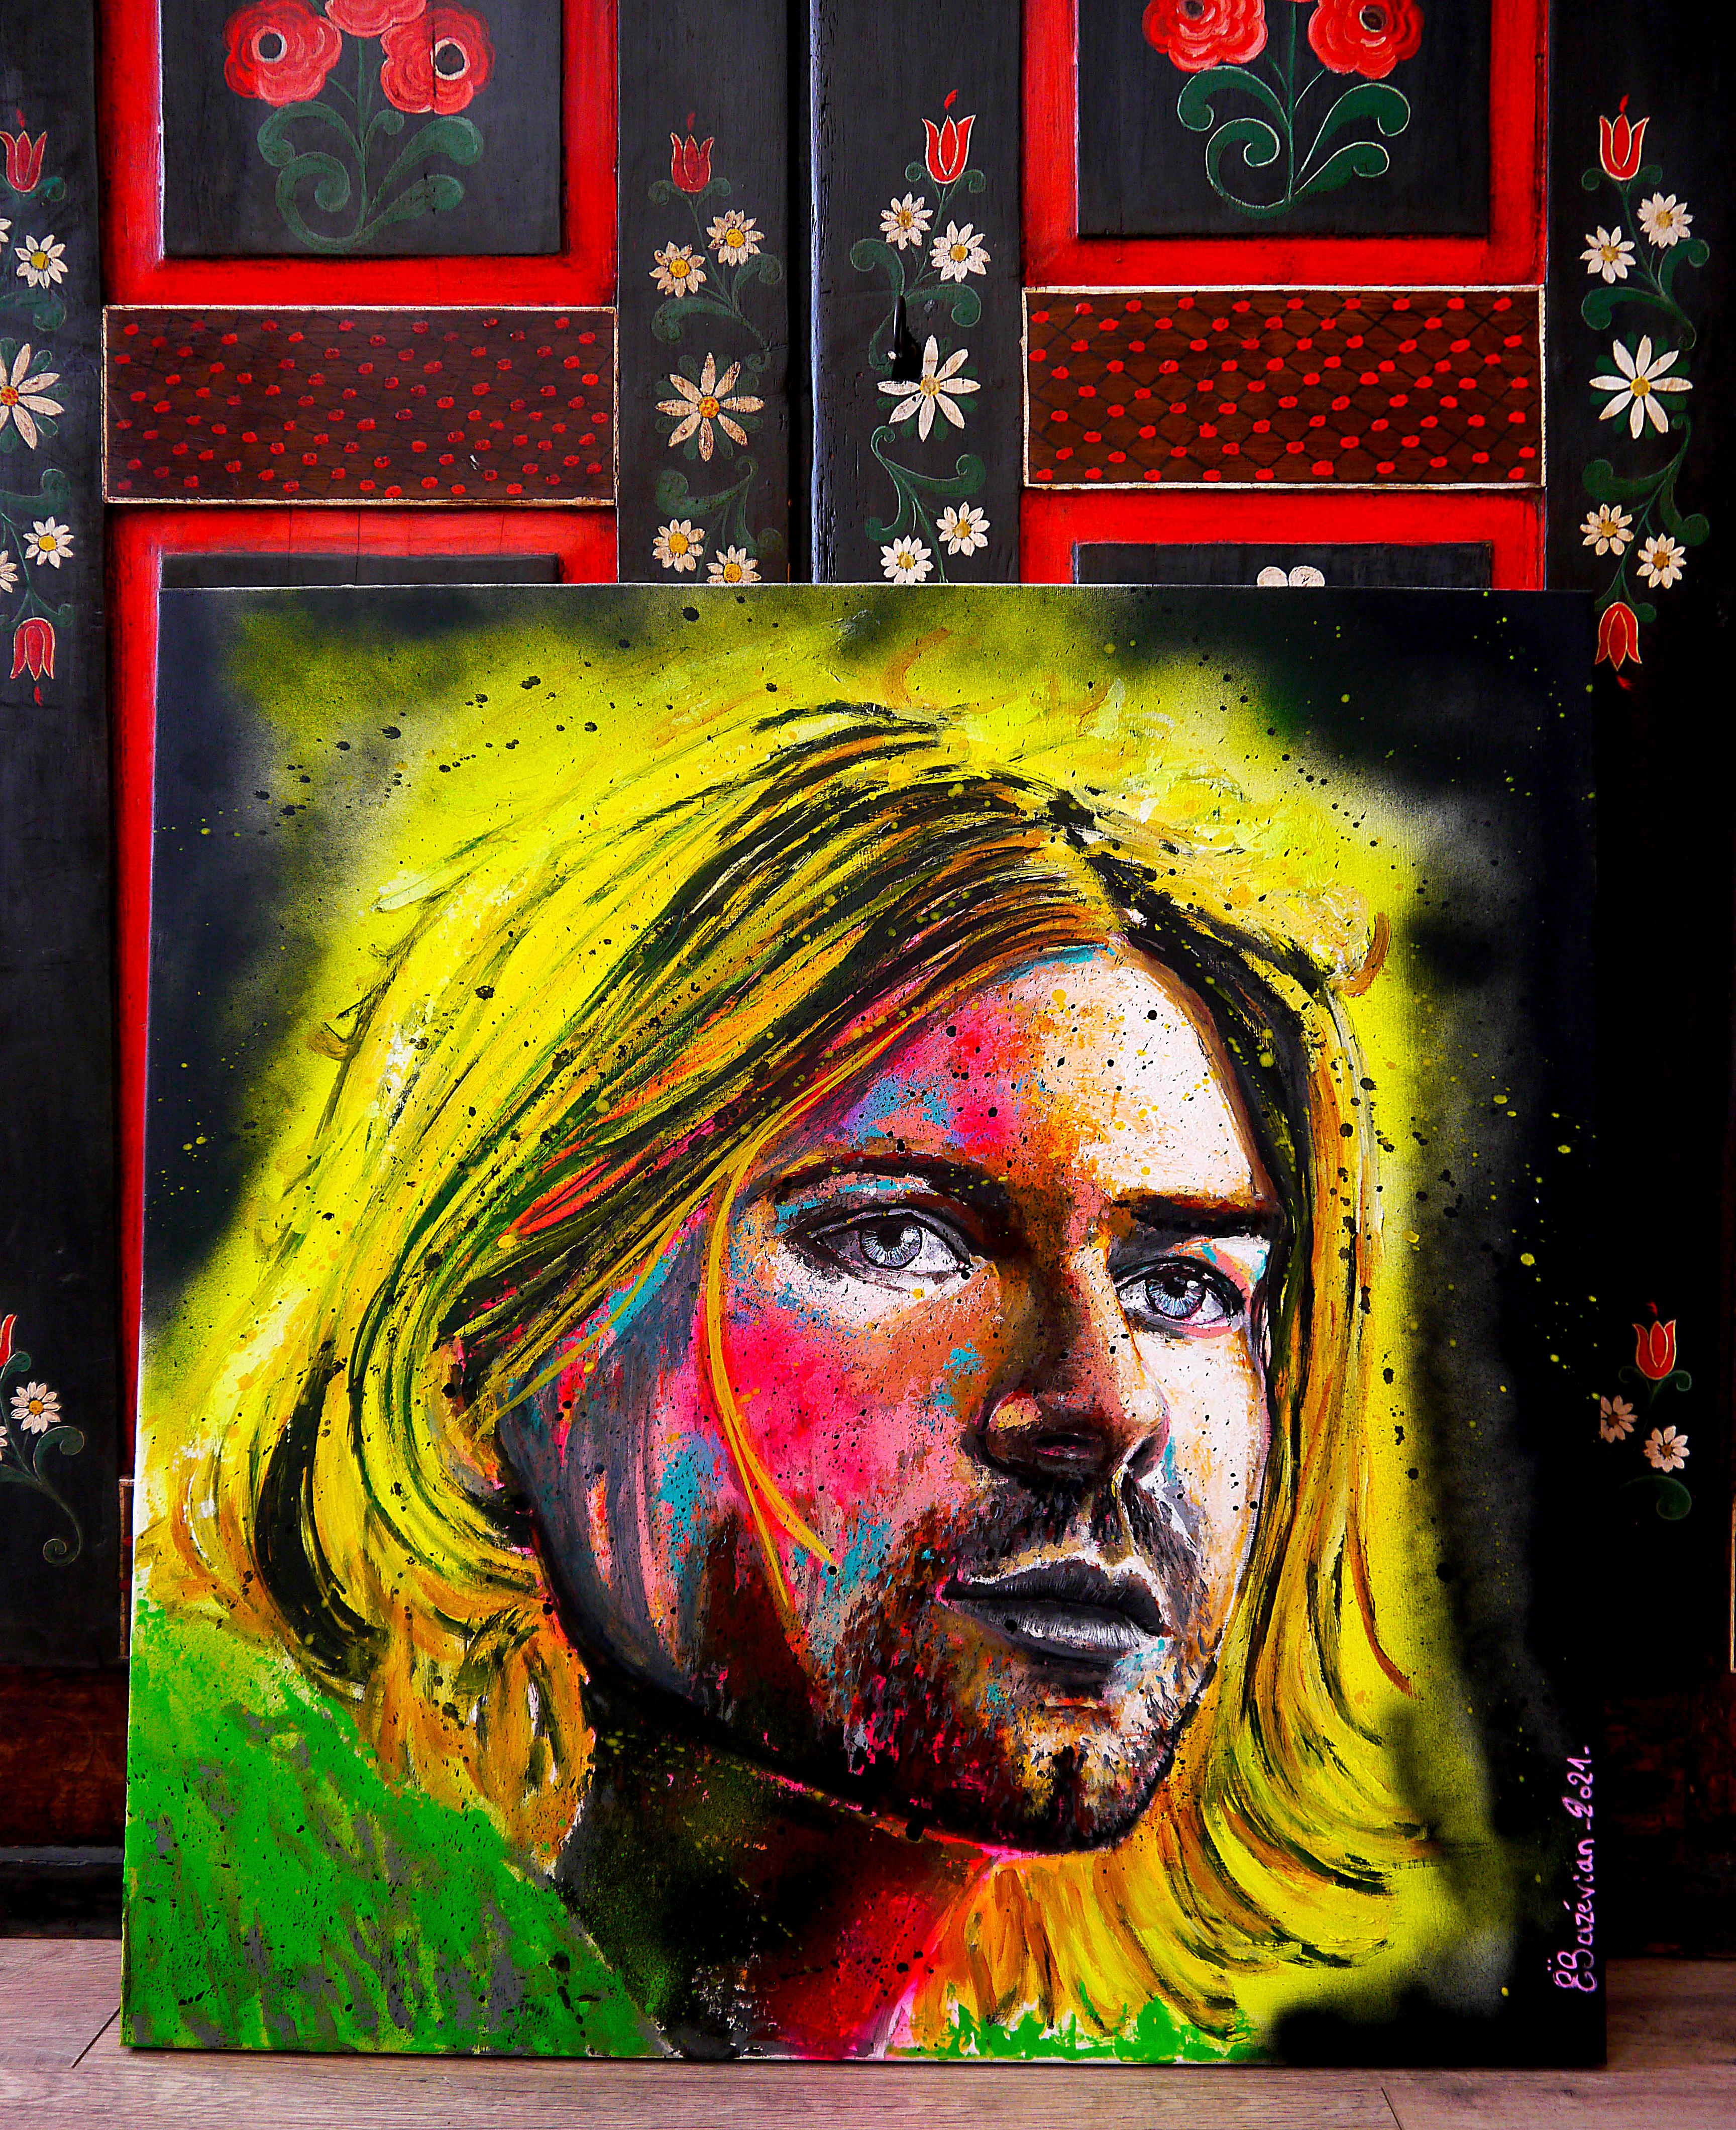 Portrait Kurt Cobain - Nirvana - Grunge

Portrait emblématique de Kurt Icone en fluo.

Technique : Acrylique, peinture à l'huile, encre de Chine sur toile 80x80cm / 31,5x31,5inch

》》R E A D Y -- T O -- H A N G《《

❶ → Œuvre originale signée.